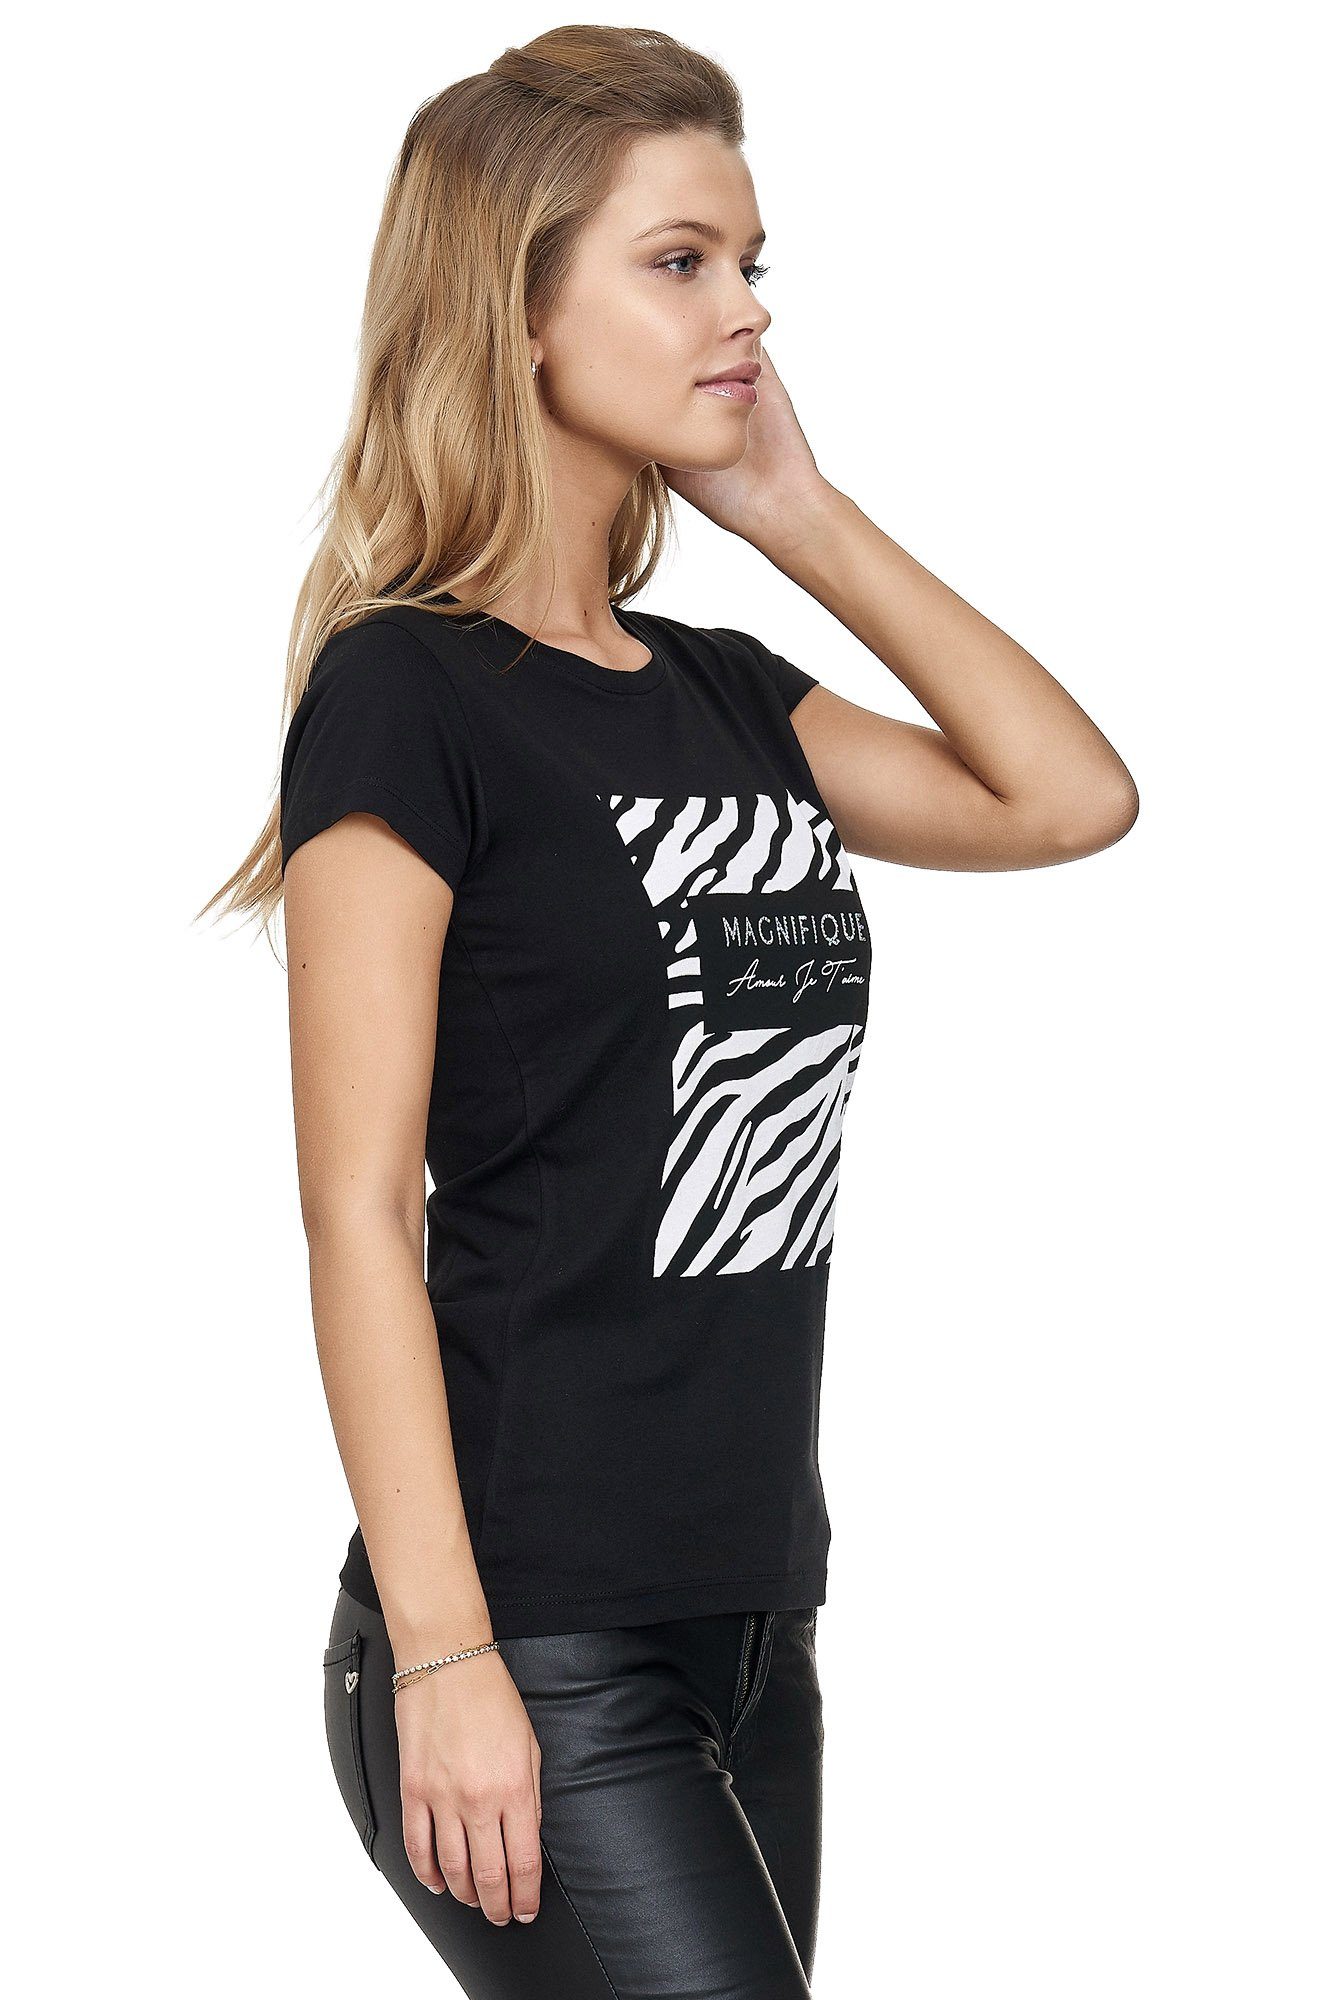 Frontprint schwarz glänzendem Decay T-Shirt mit